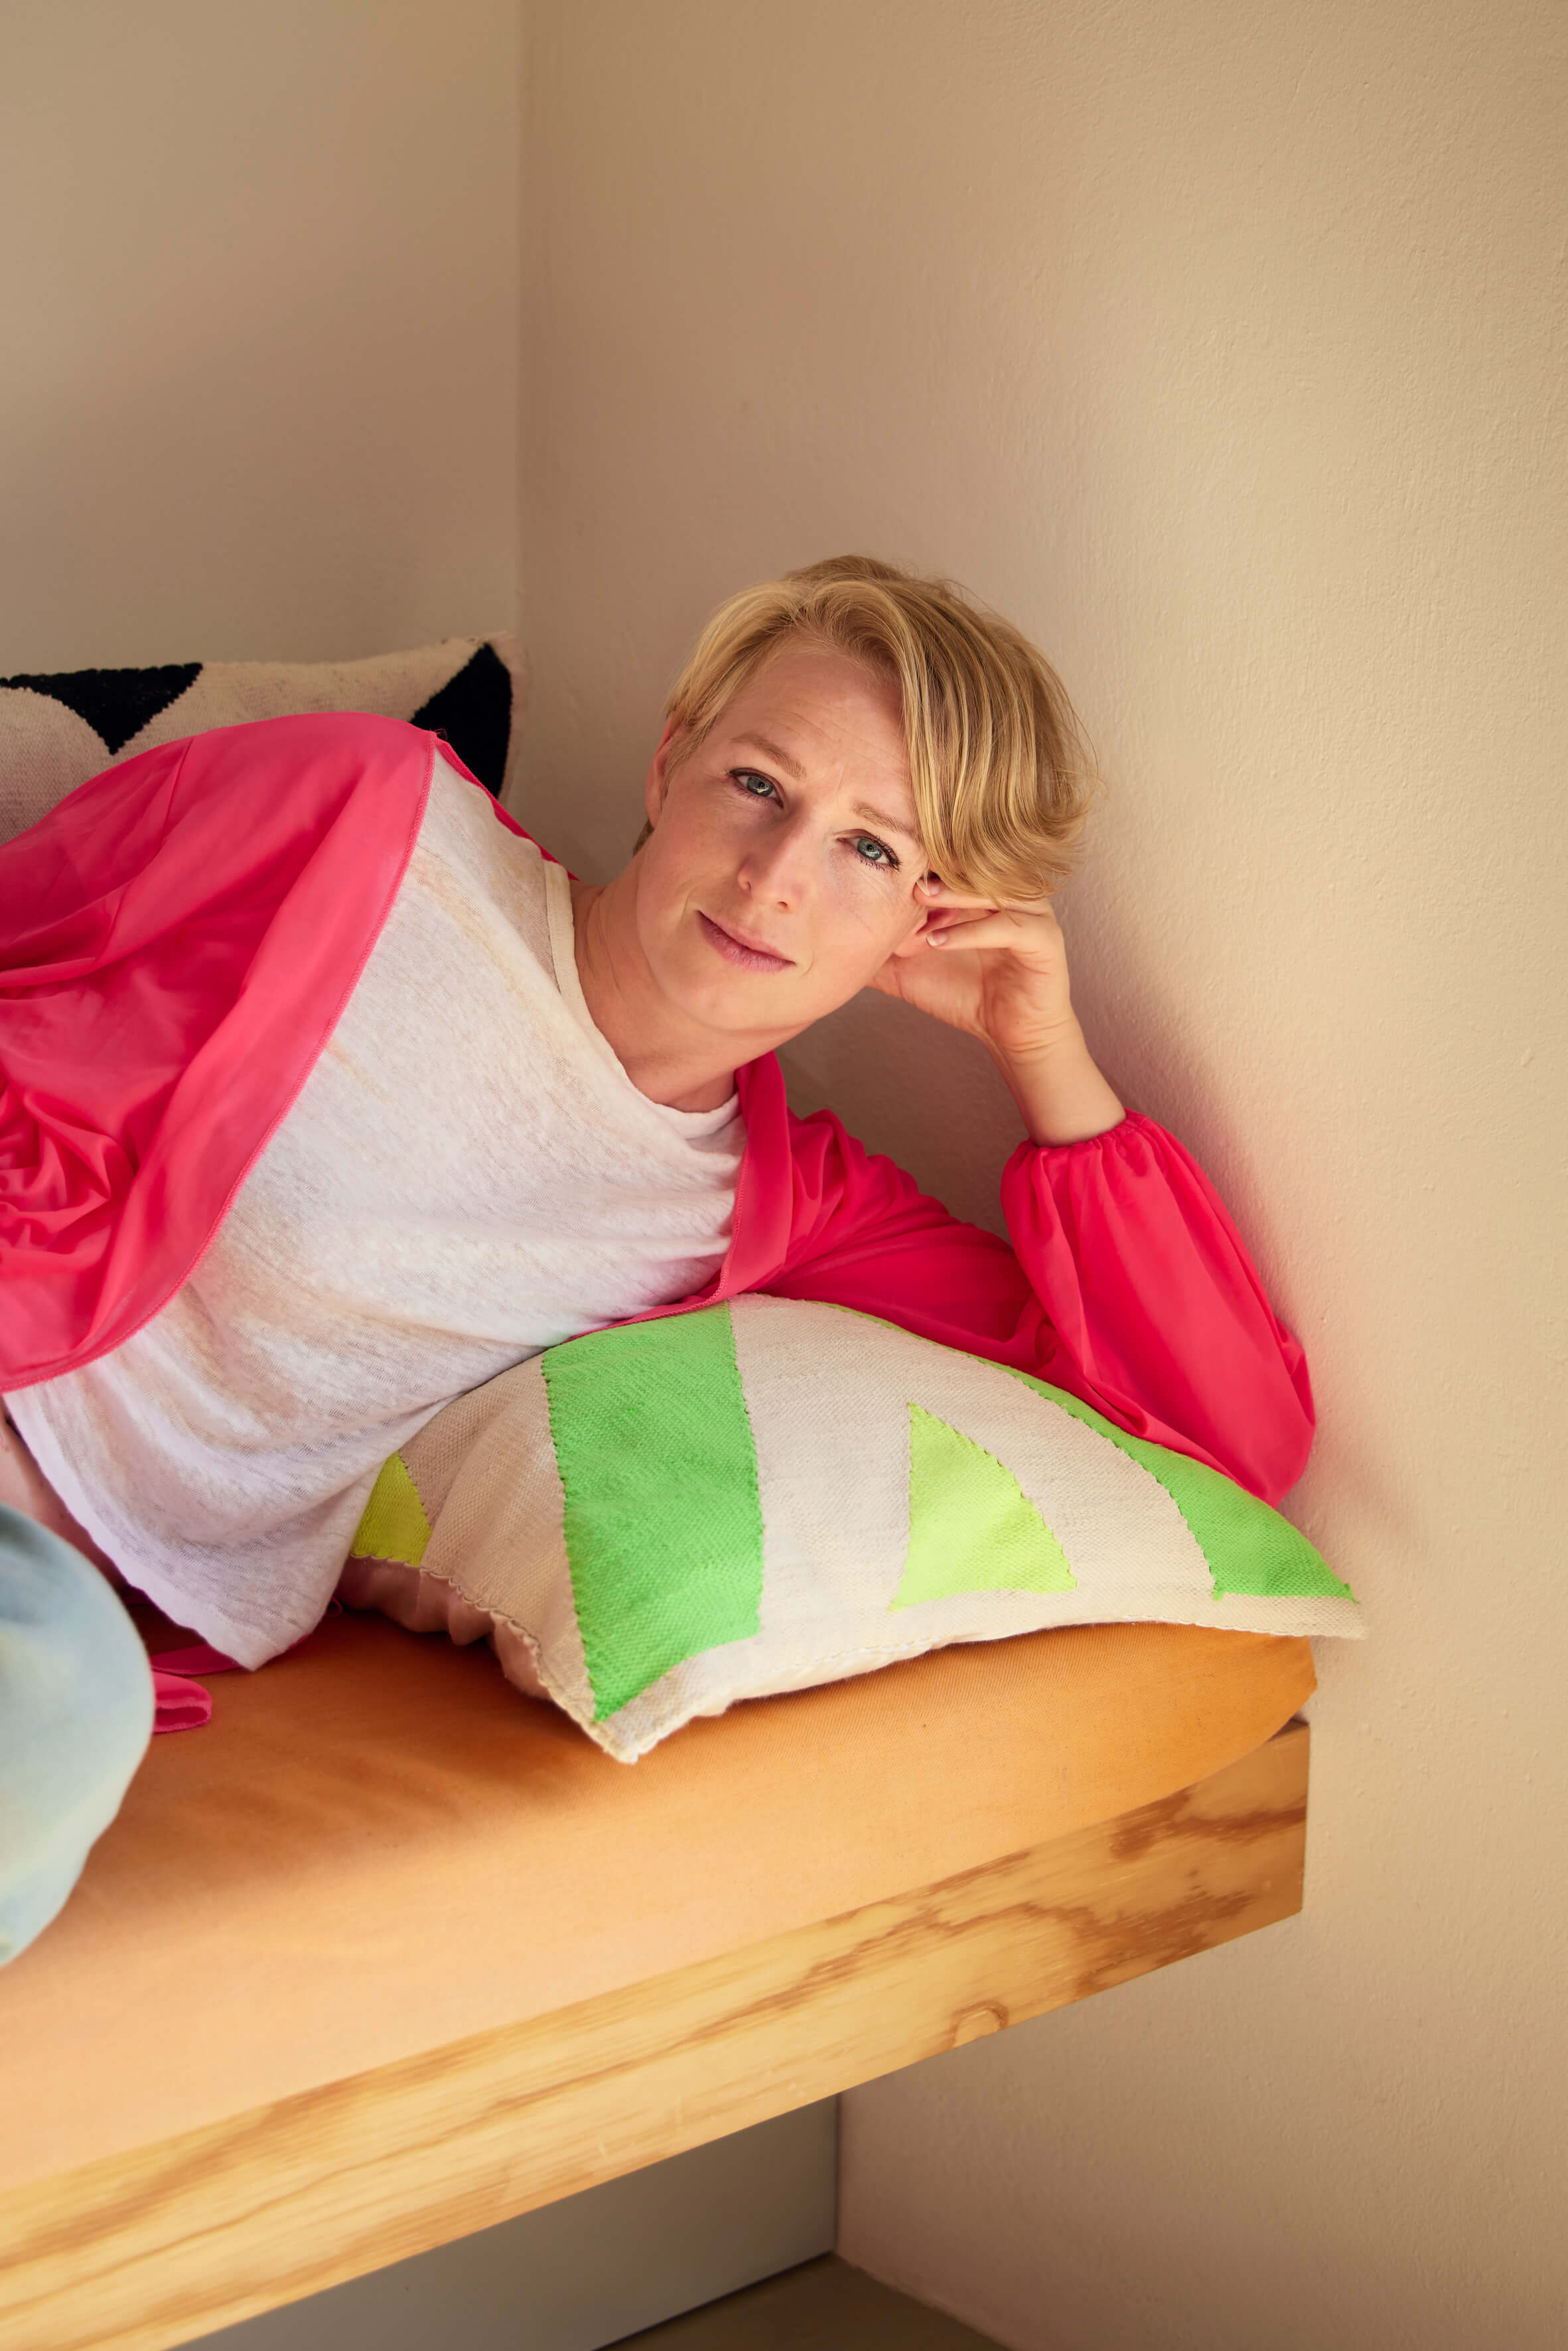 Eine Person mit kurzen blonden Haaren, weißem T-Shirt und langem rosa Cardigan sowie hellblauen Jeans sitzt auf einem Sofa mit bunten Kissen und lächelt in die Kamera.